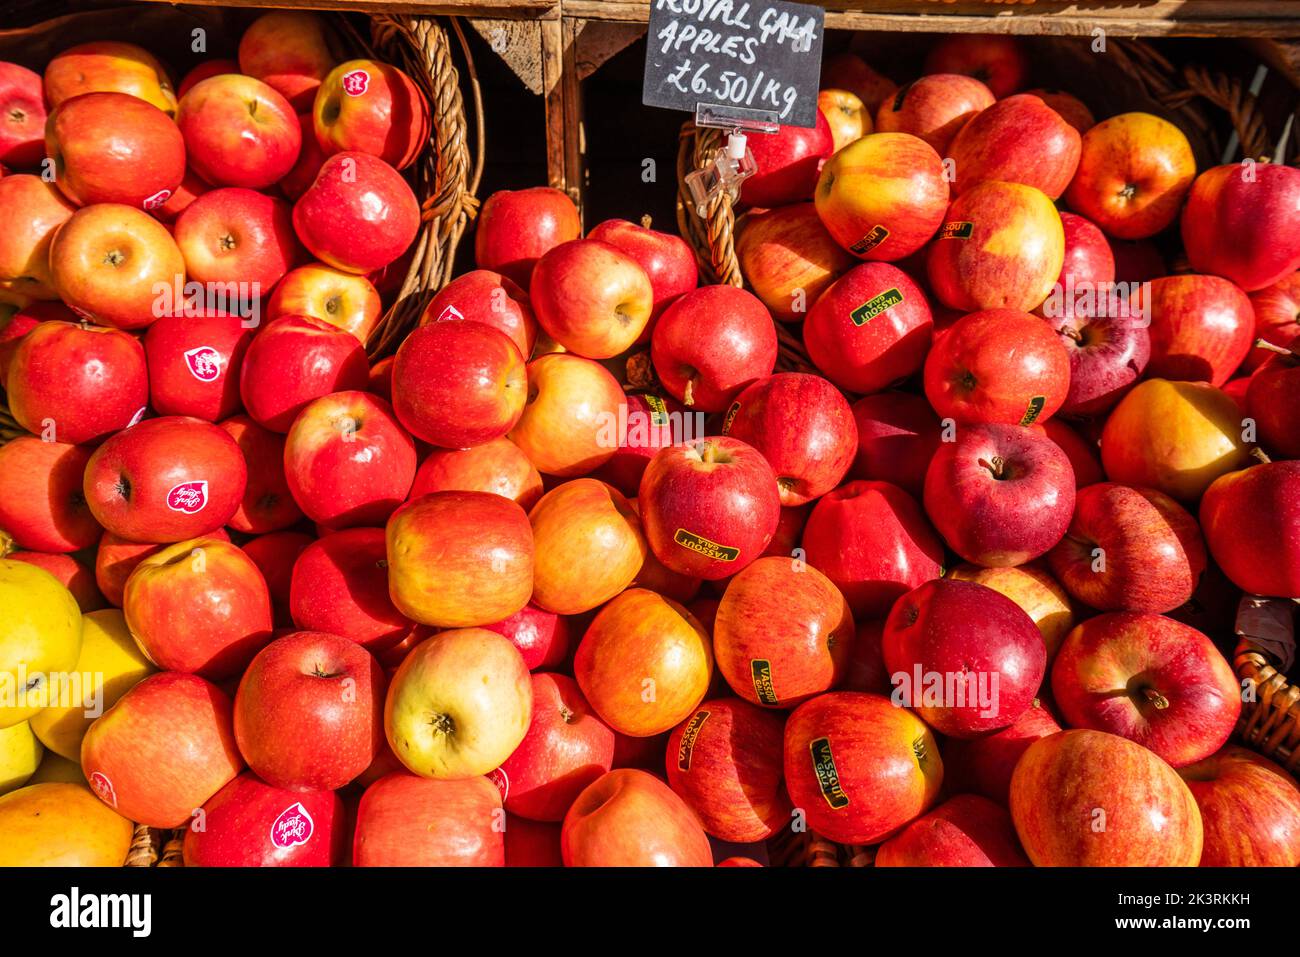 28 de septiembre de 2022: Las manzanas Royal Gala se exhiben en un mercado, Londres, Reino Unido Foto de stock